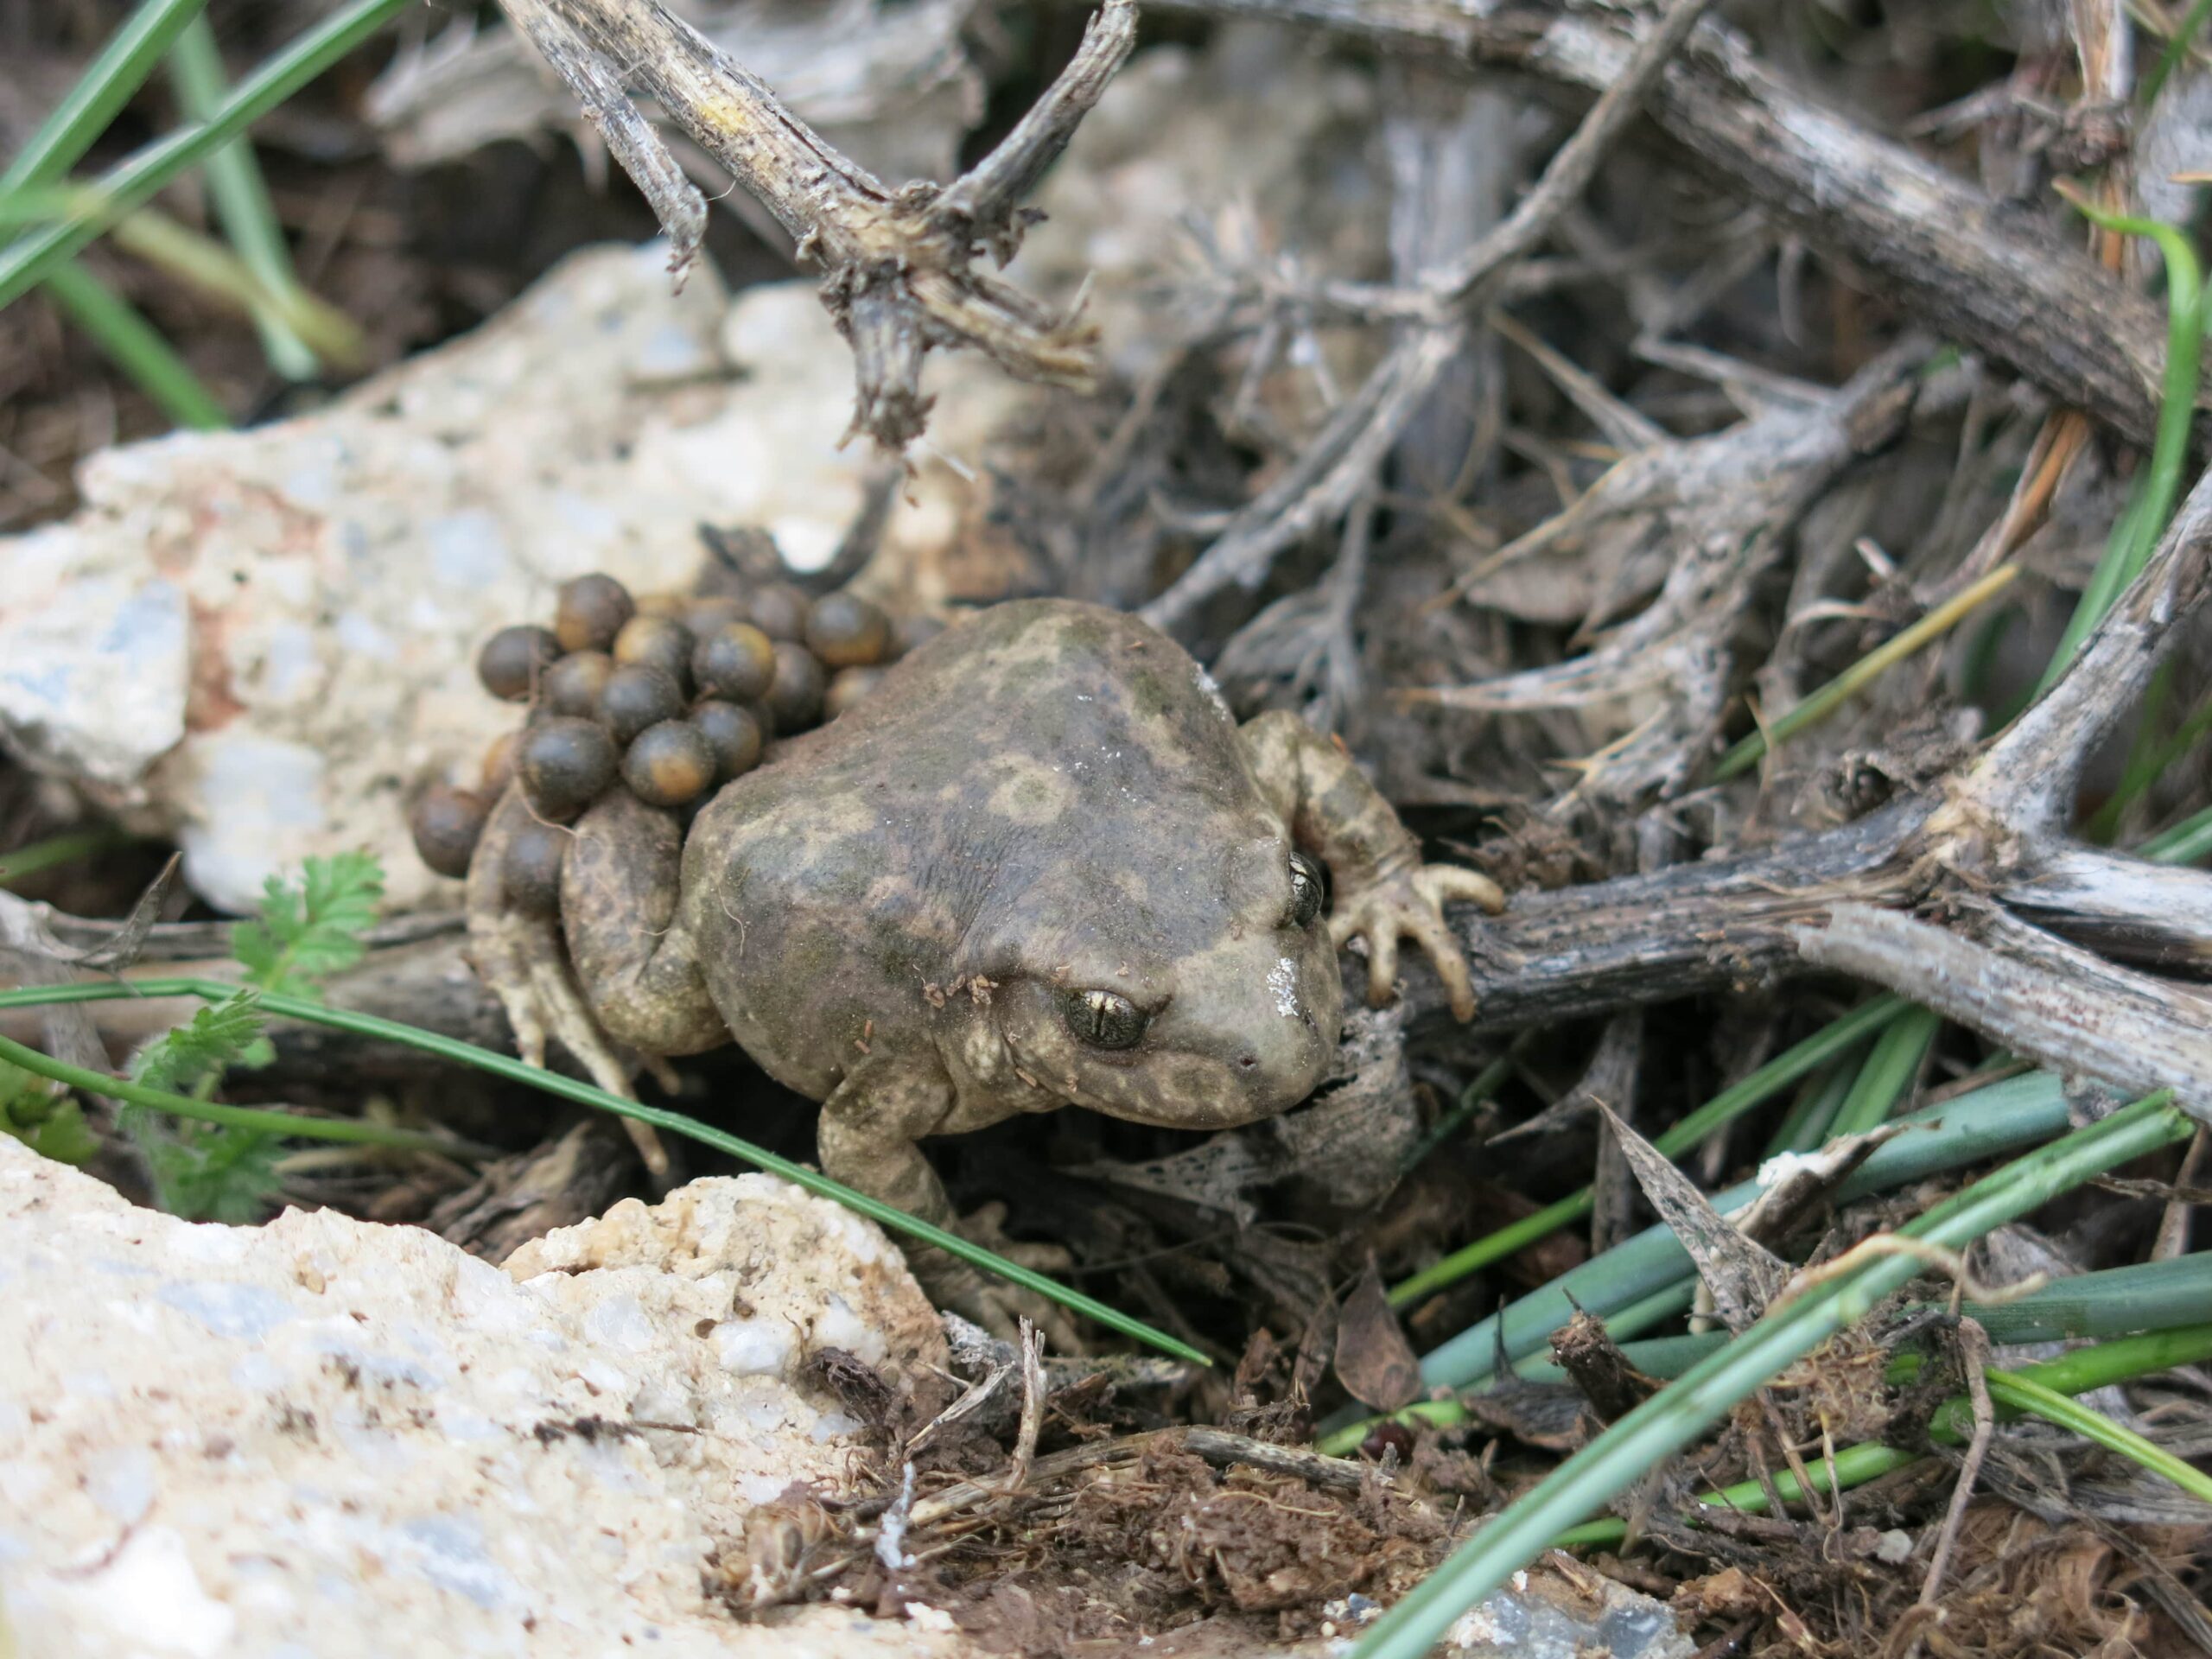 Betic midwife toad (Alytes dickelinii): amphibien menacé endémique d'Andalousie